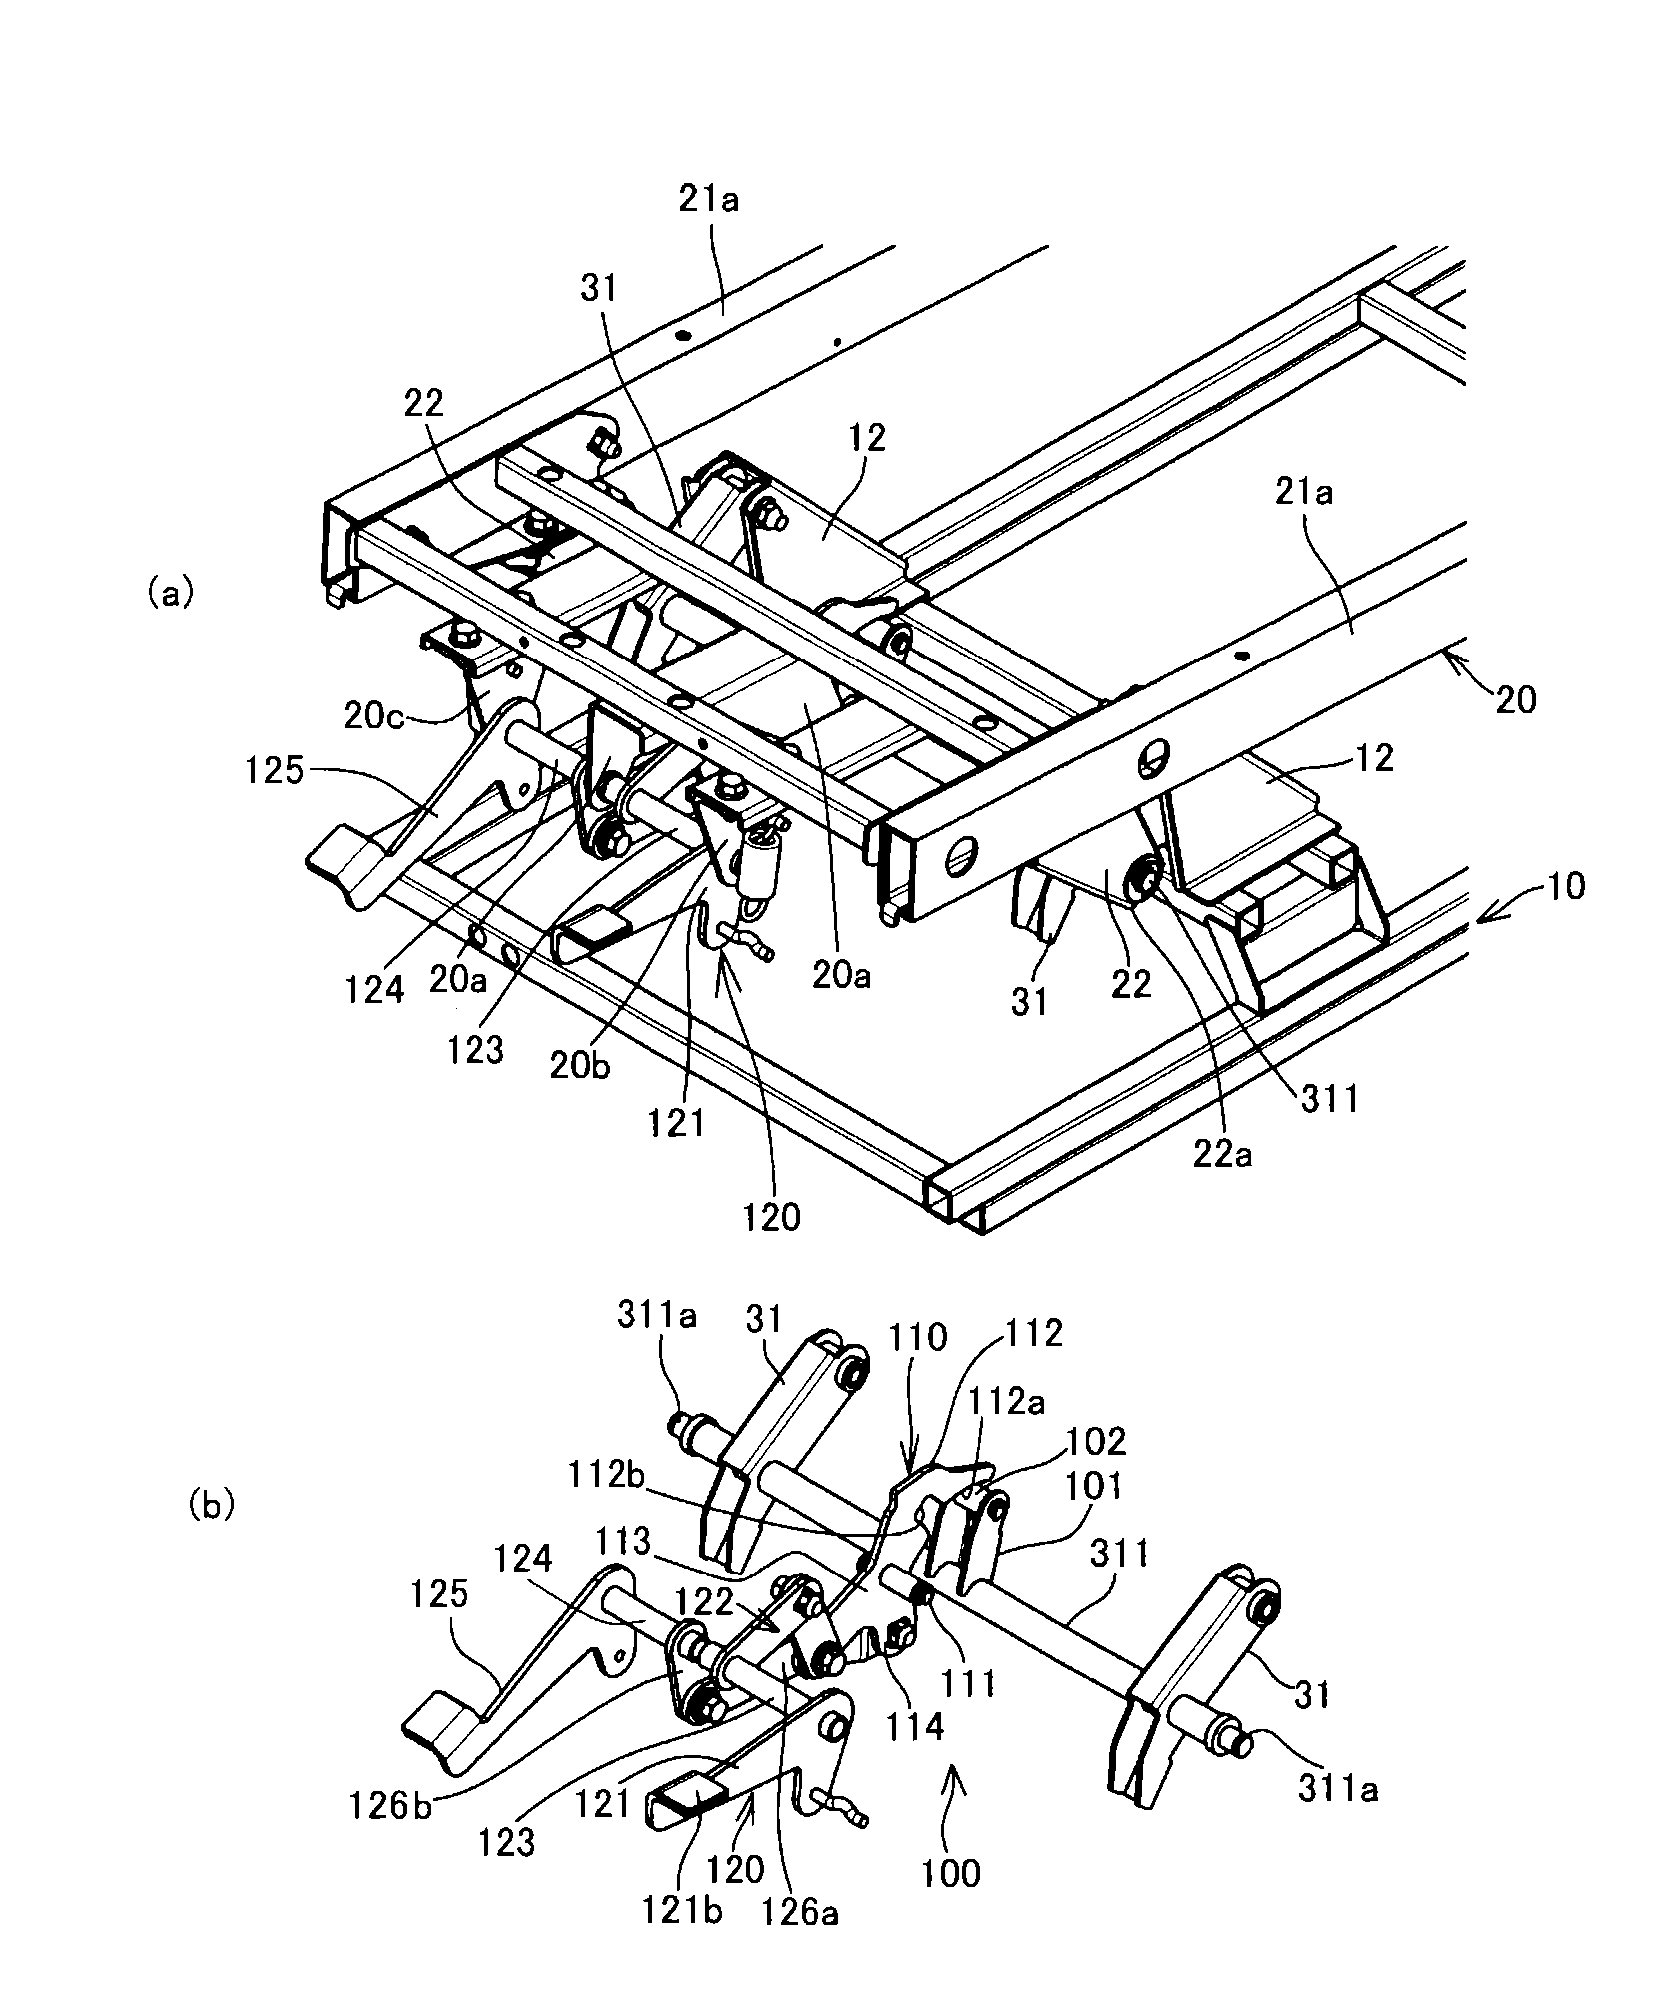 Upper frame position holding structure and ambulance vibration-proof rack having upper frame position holding structure